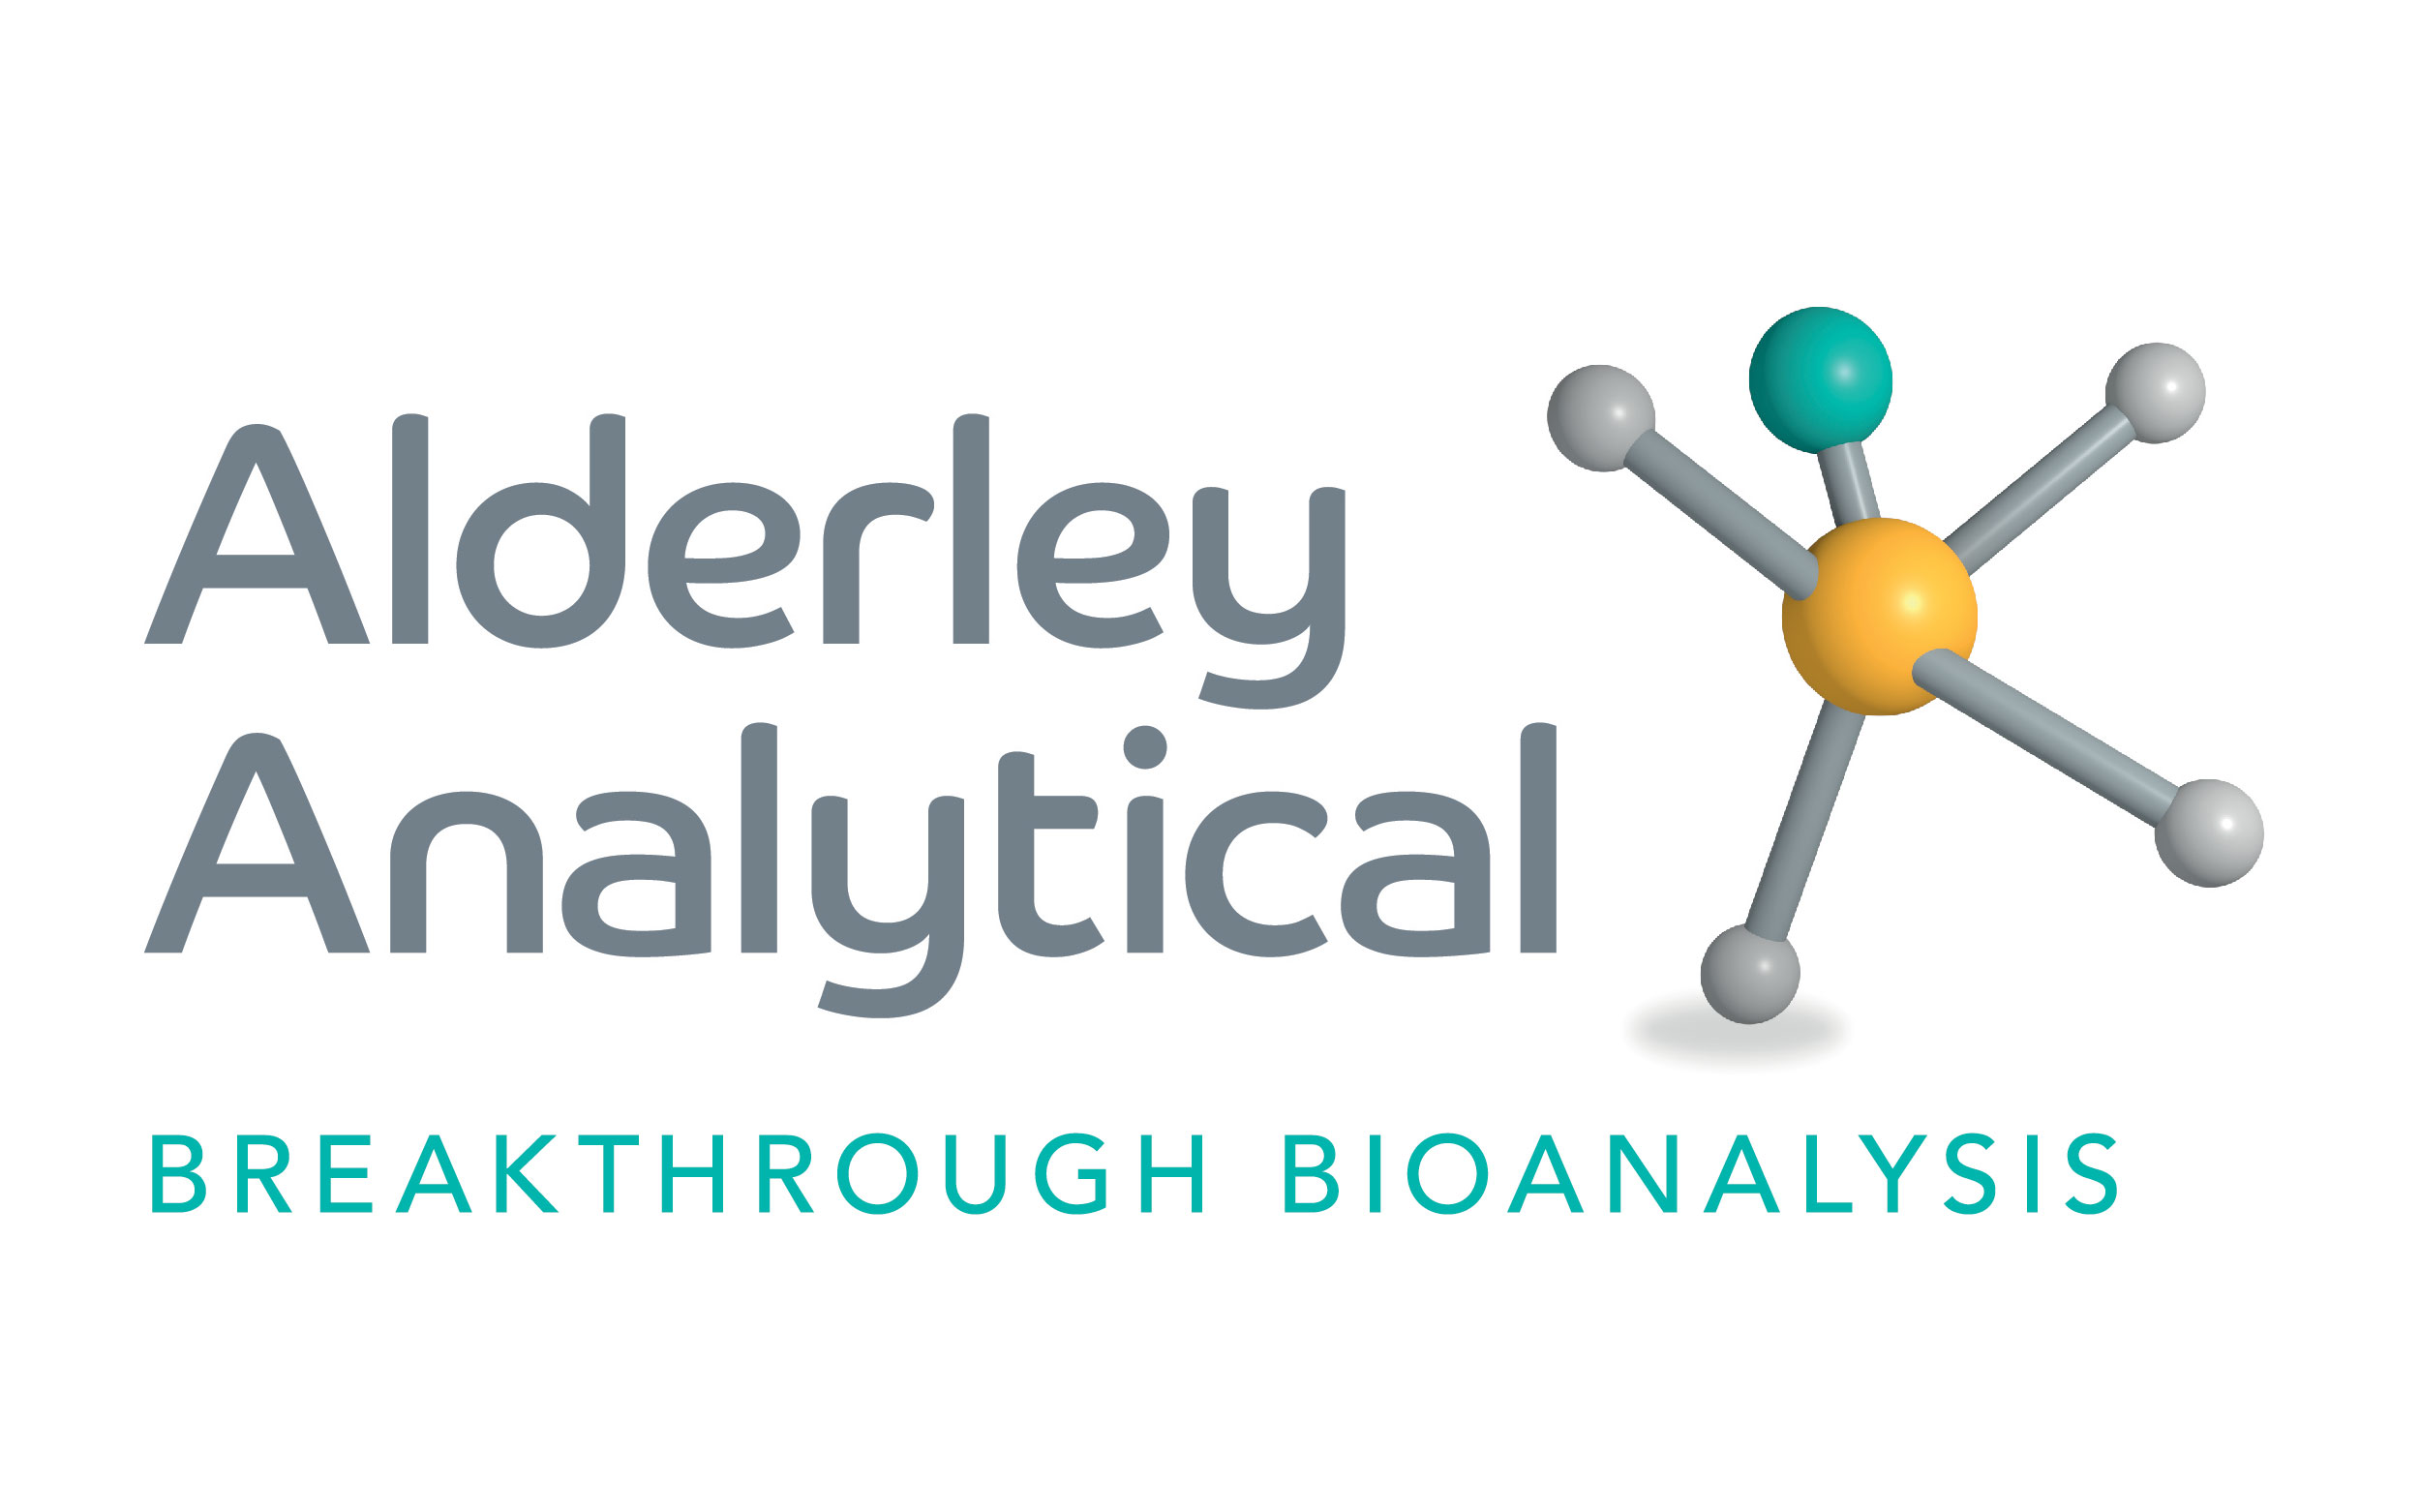 alderley analytical breakthrough bioanalysis